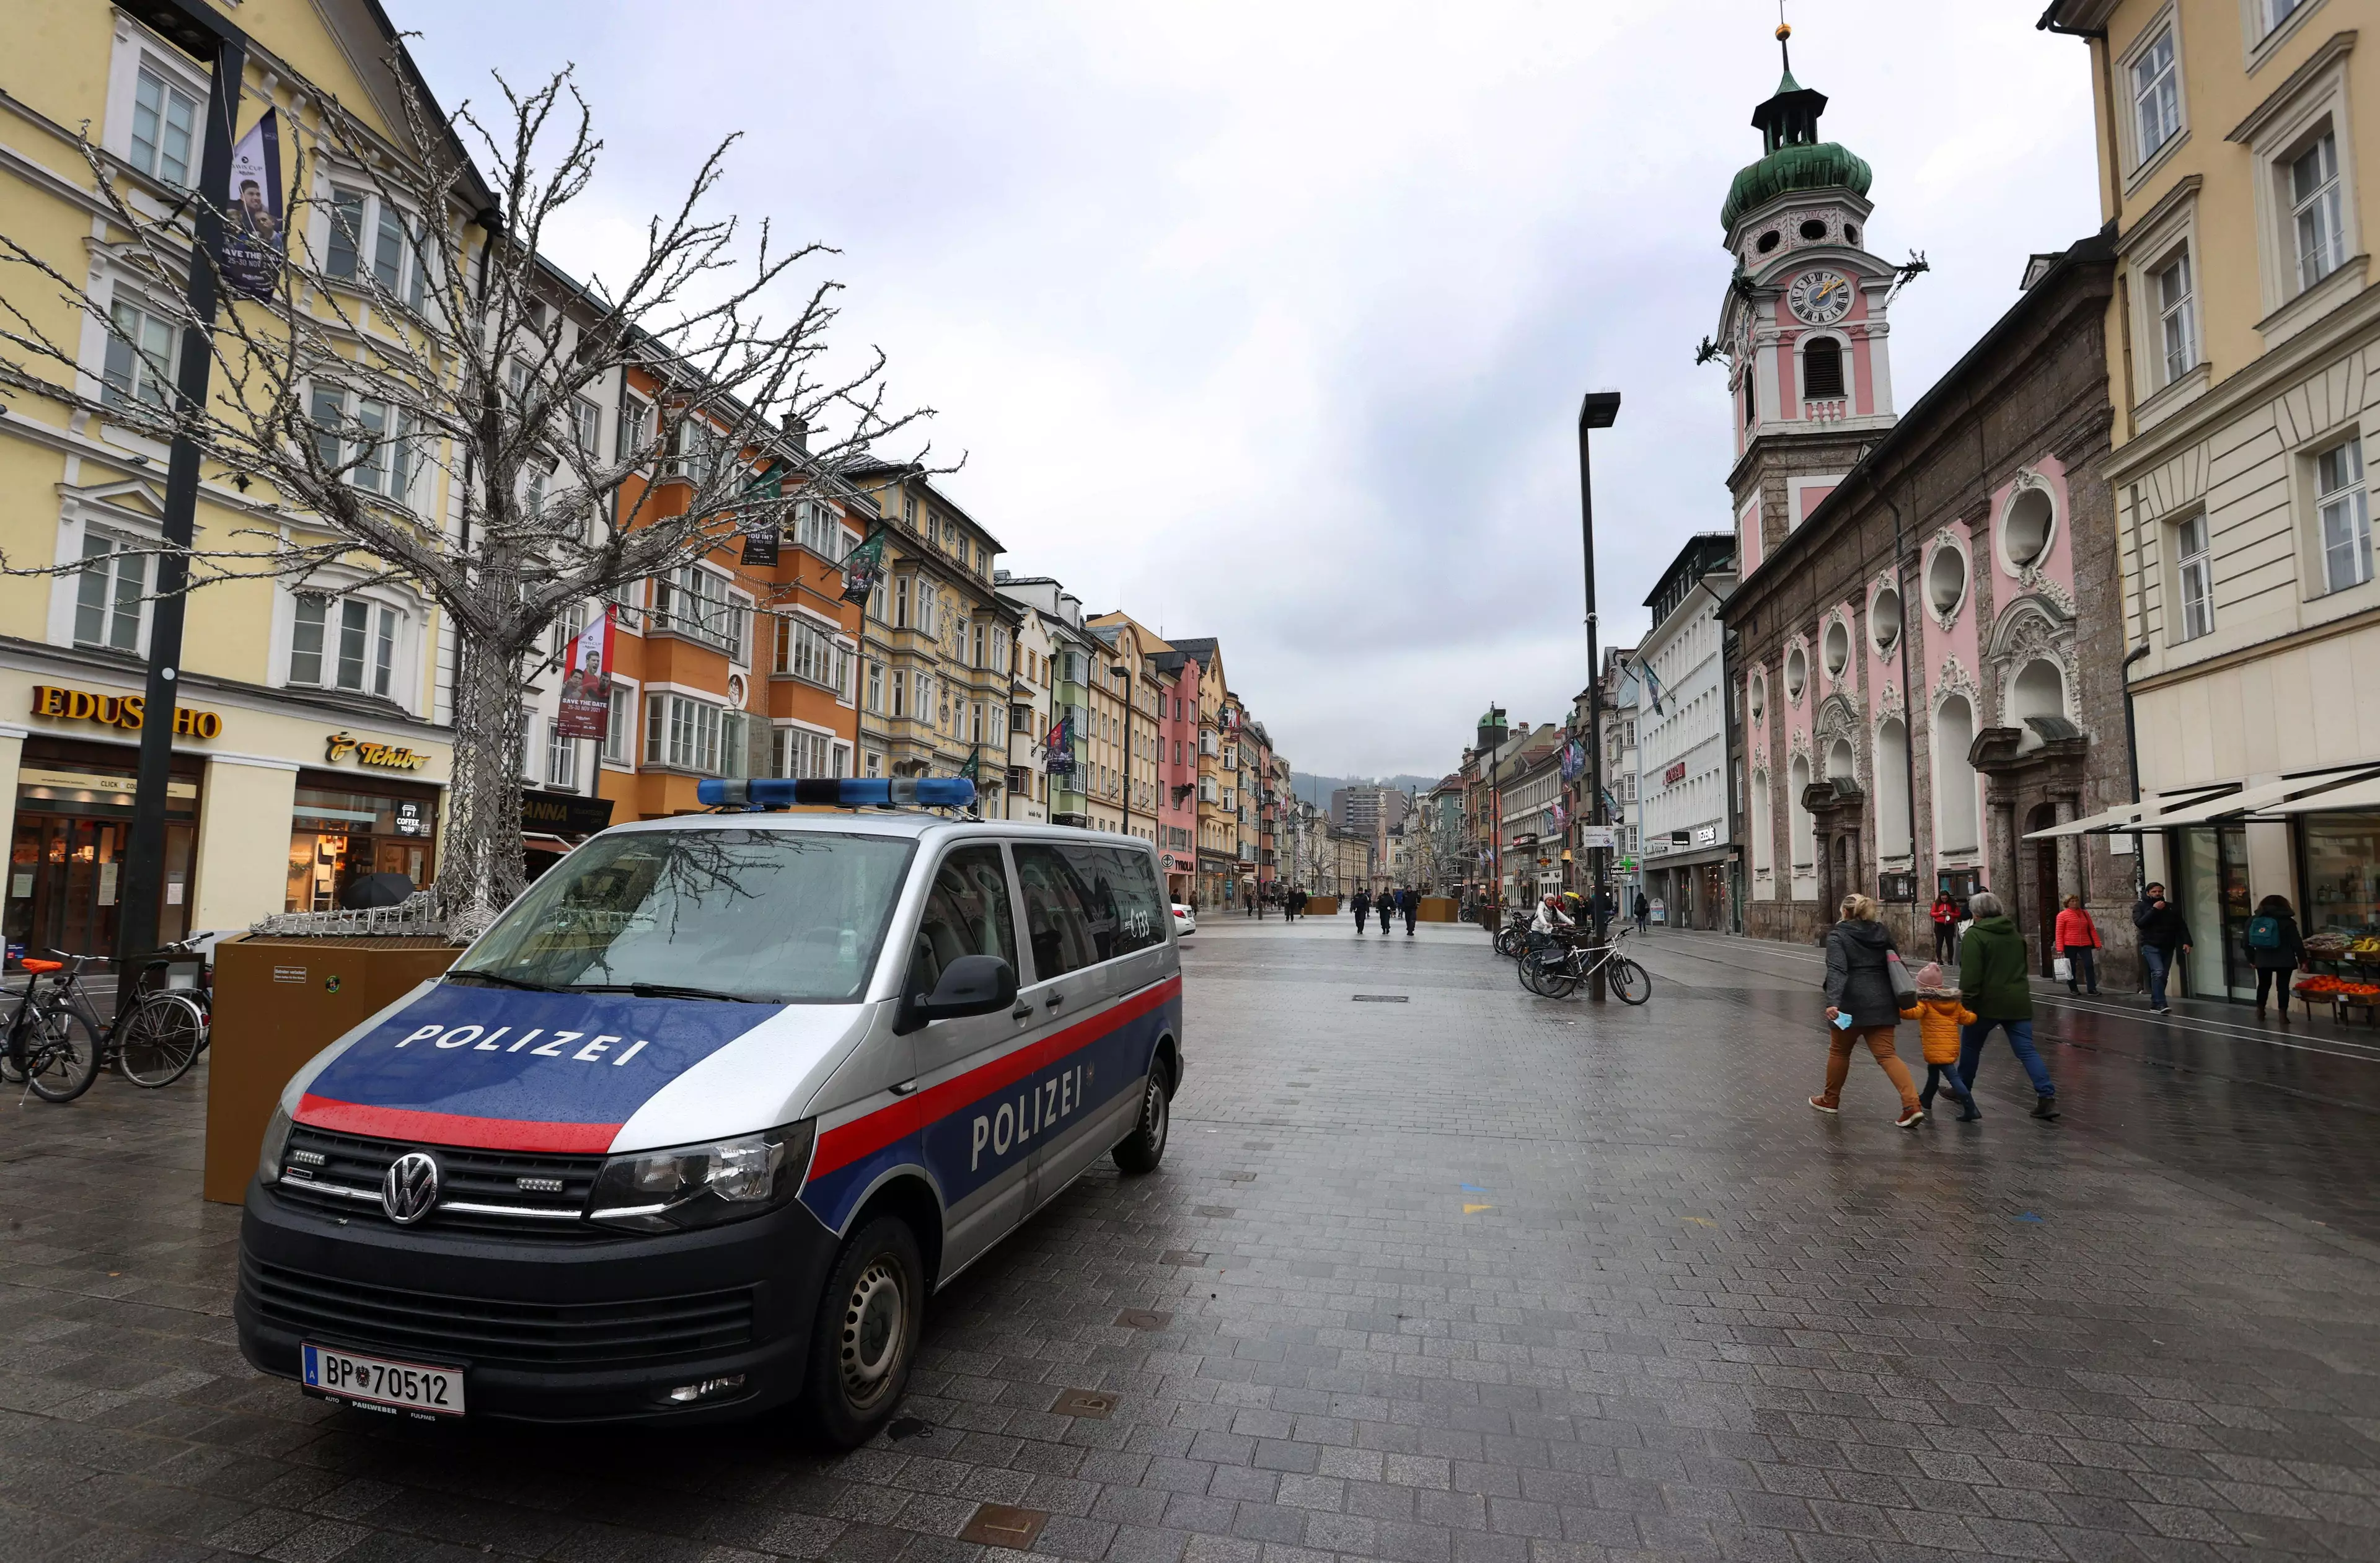 Austria has been put back in lockdown.